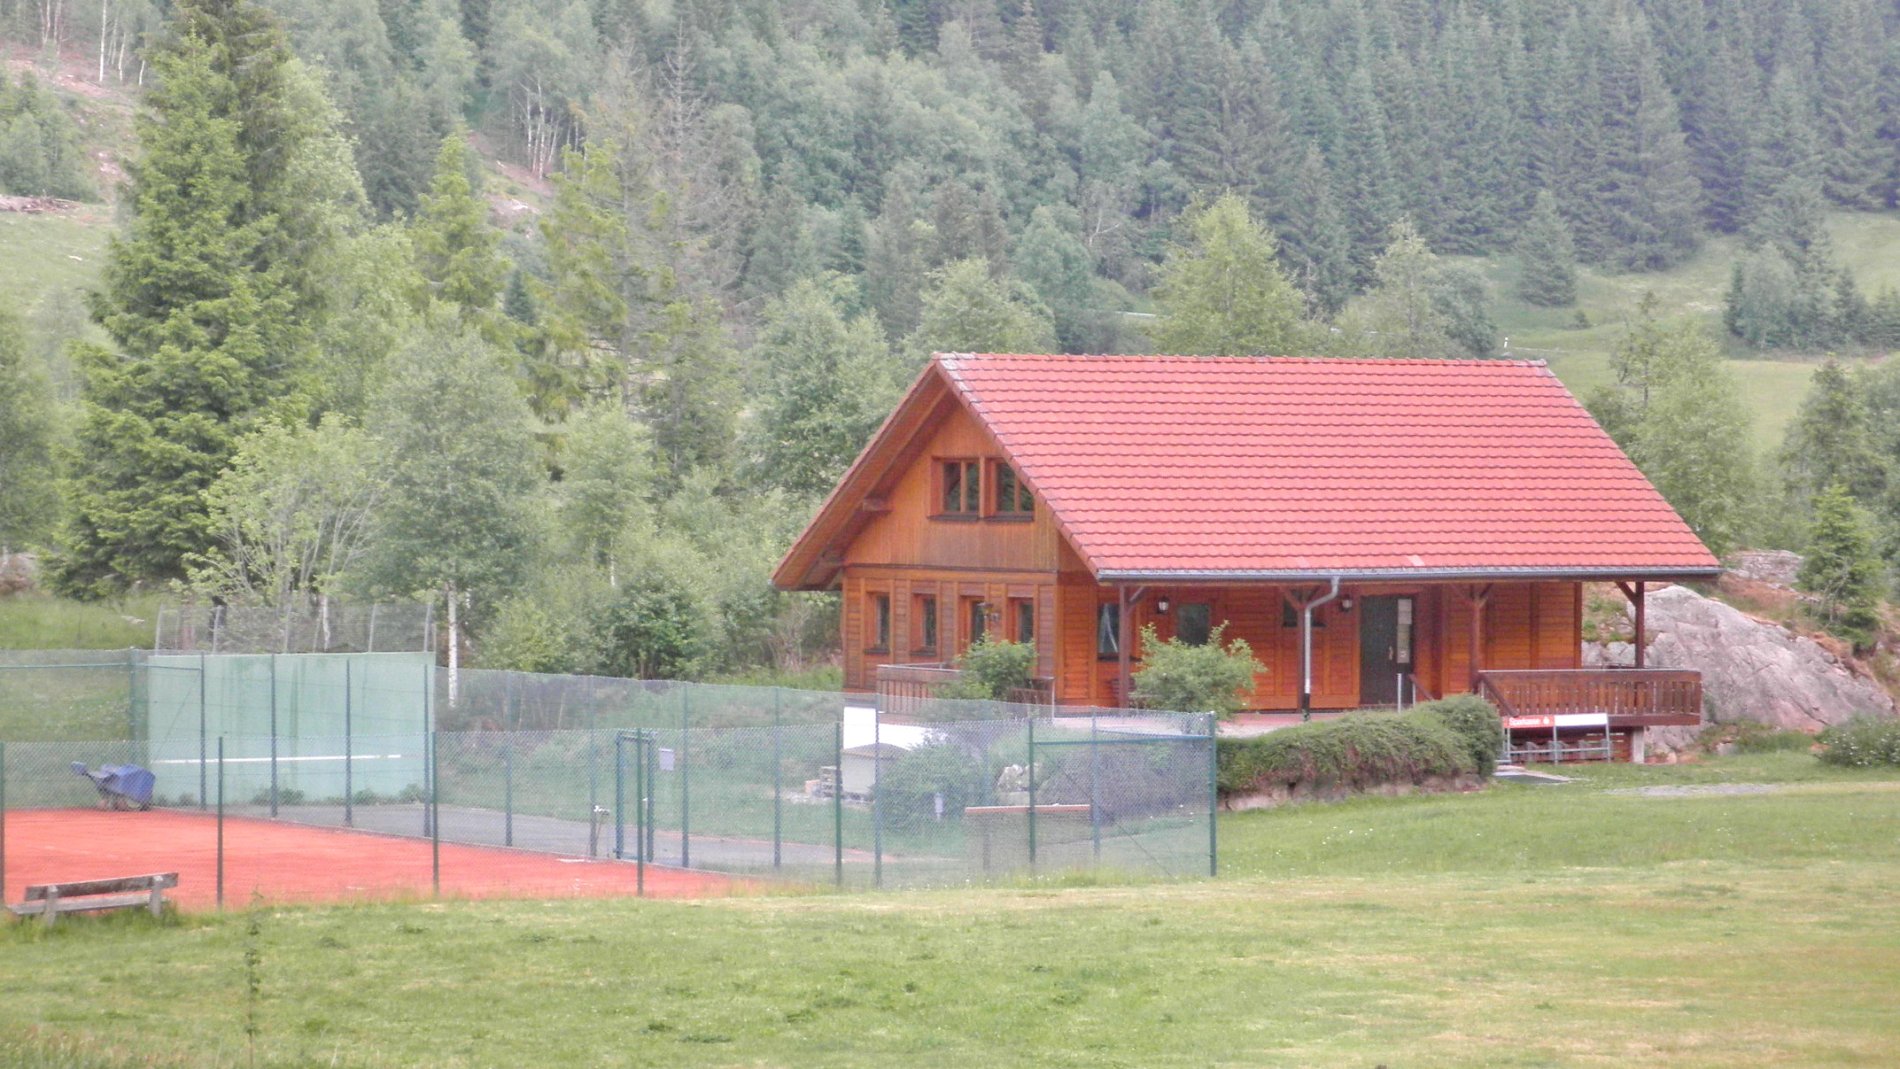 Tennisplatz in Menzenschwand